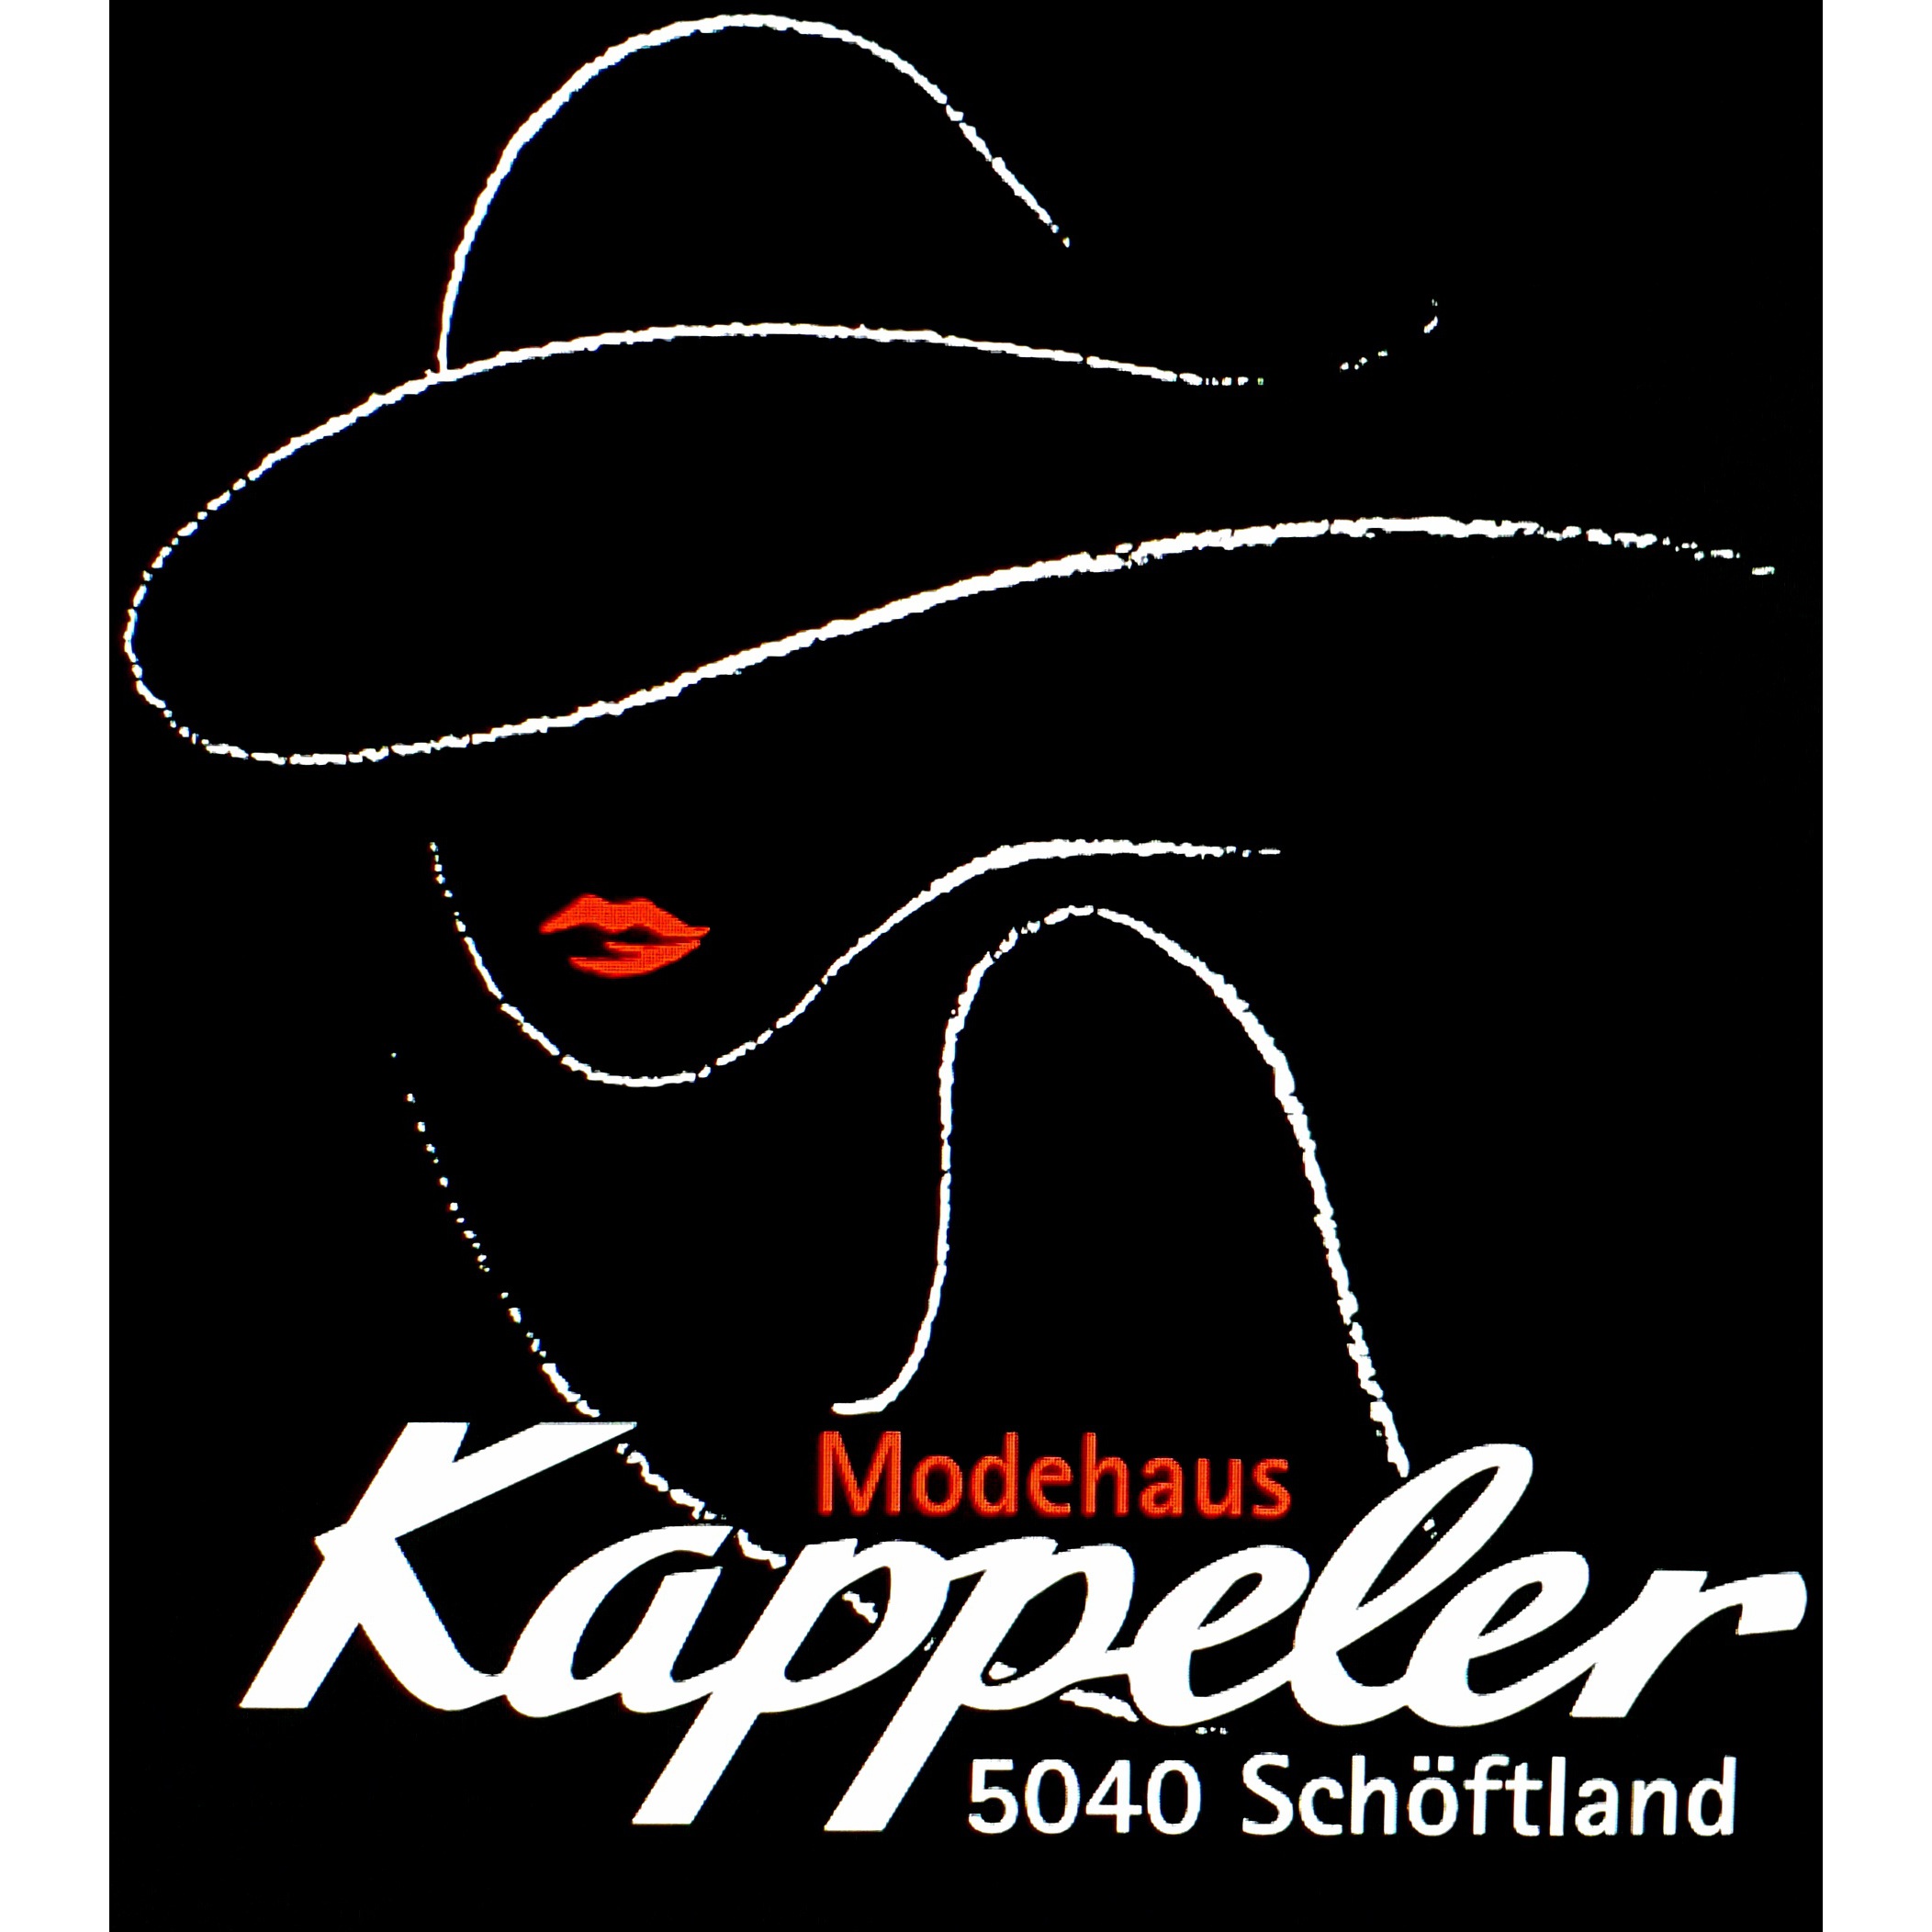 Modehaus Kappeler GmbH Logo